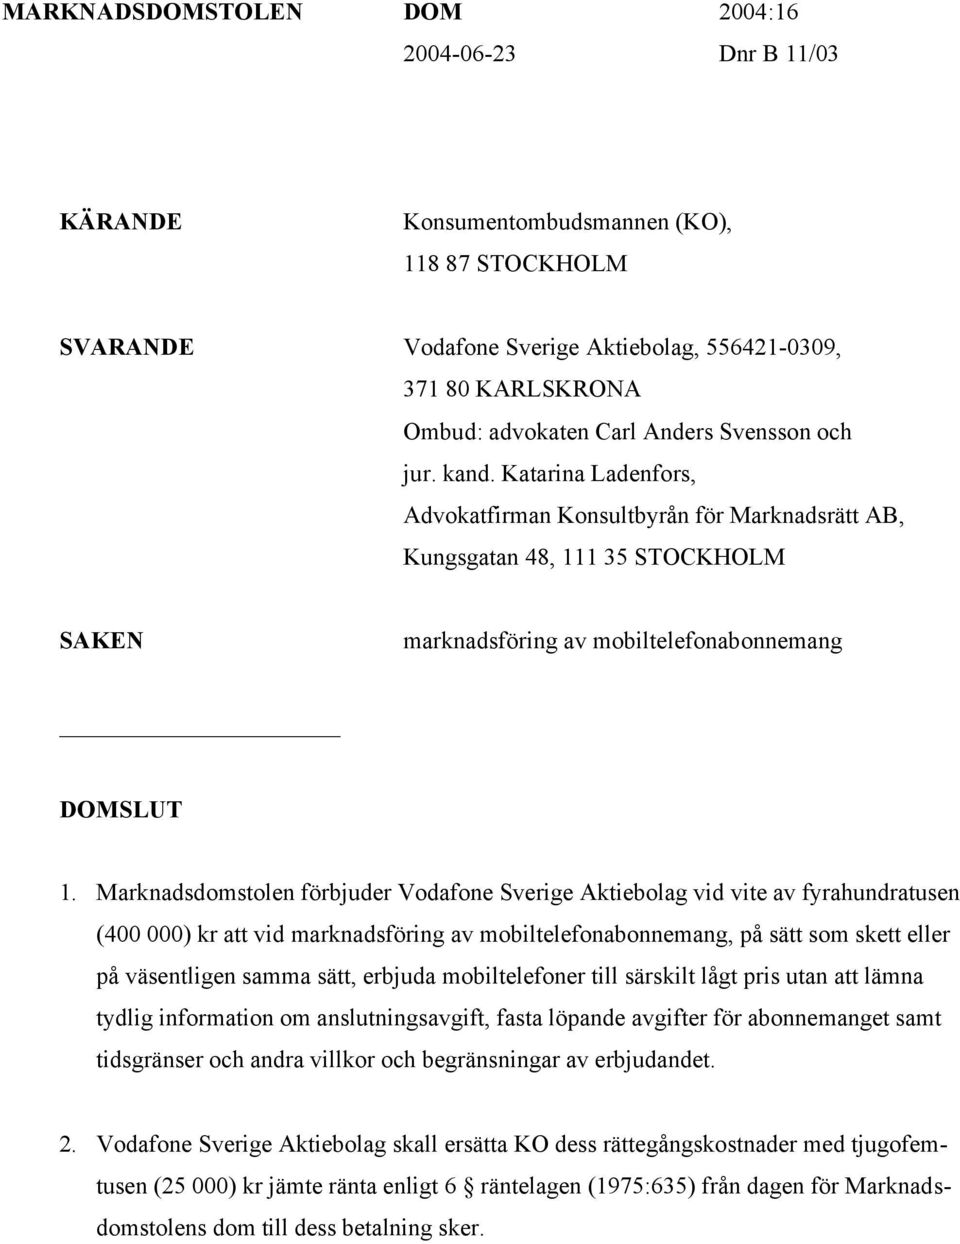 Marknadsdomstolen förbjuder Vodafone Sverige Aktiebolag vid vite av fyrahundratusen (400 000) kr att vid marknadsföring av mobiltelefonabonnemang, på sätt som skett eller på väsentligen samma sätt,